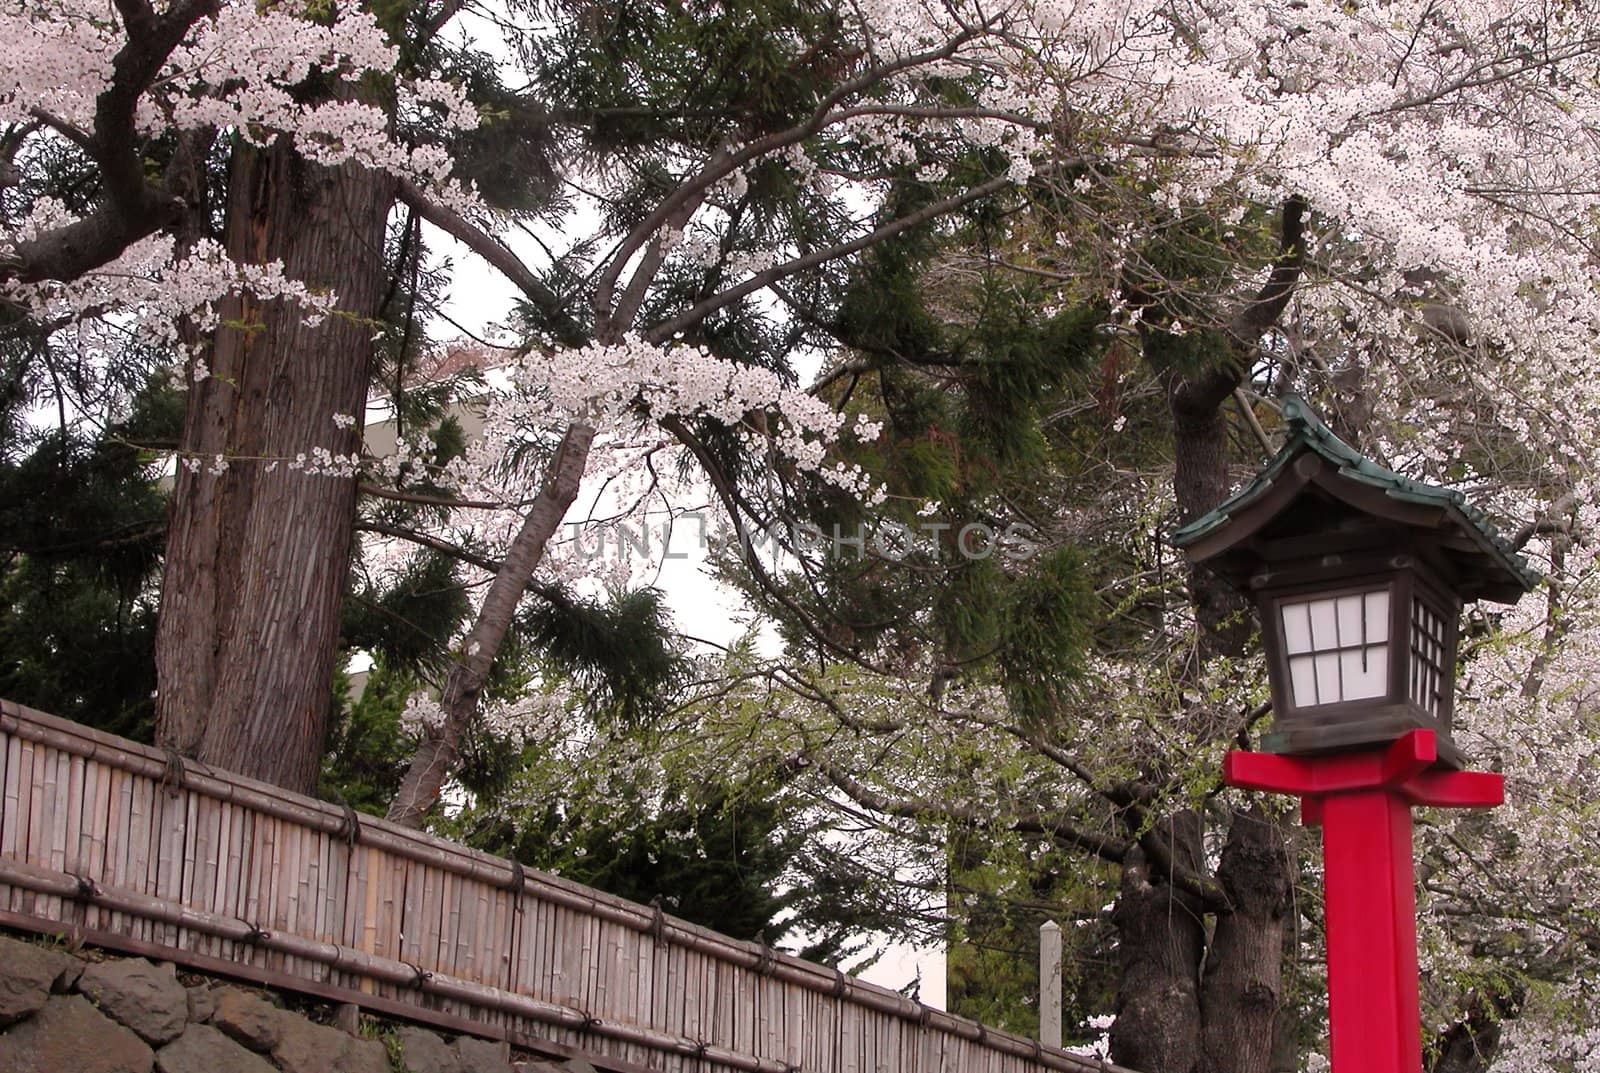 Red wooden Japanese lantern during spring season          